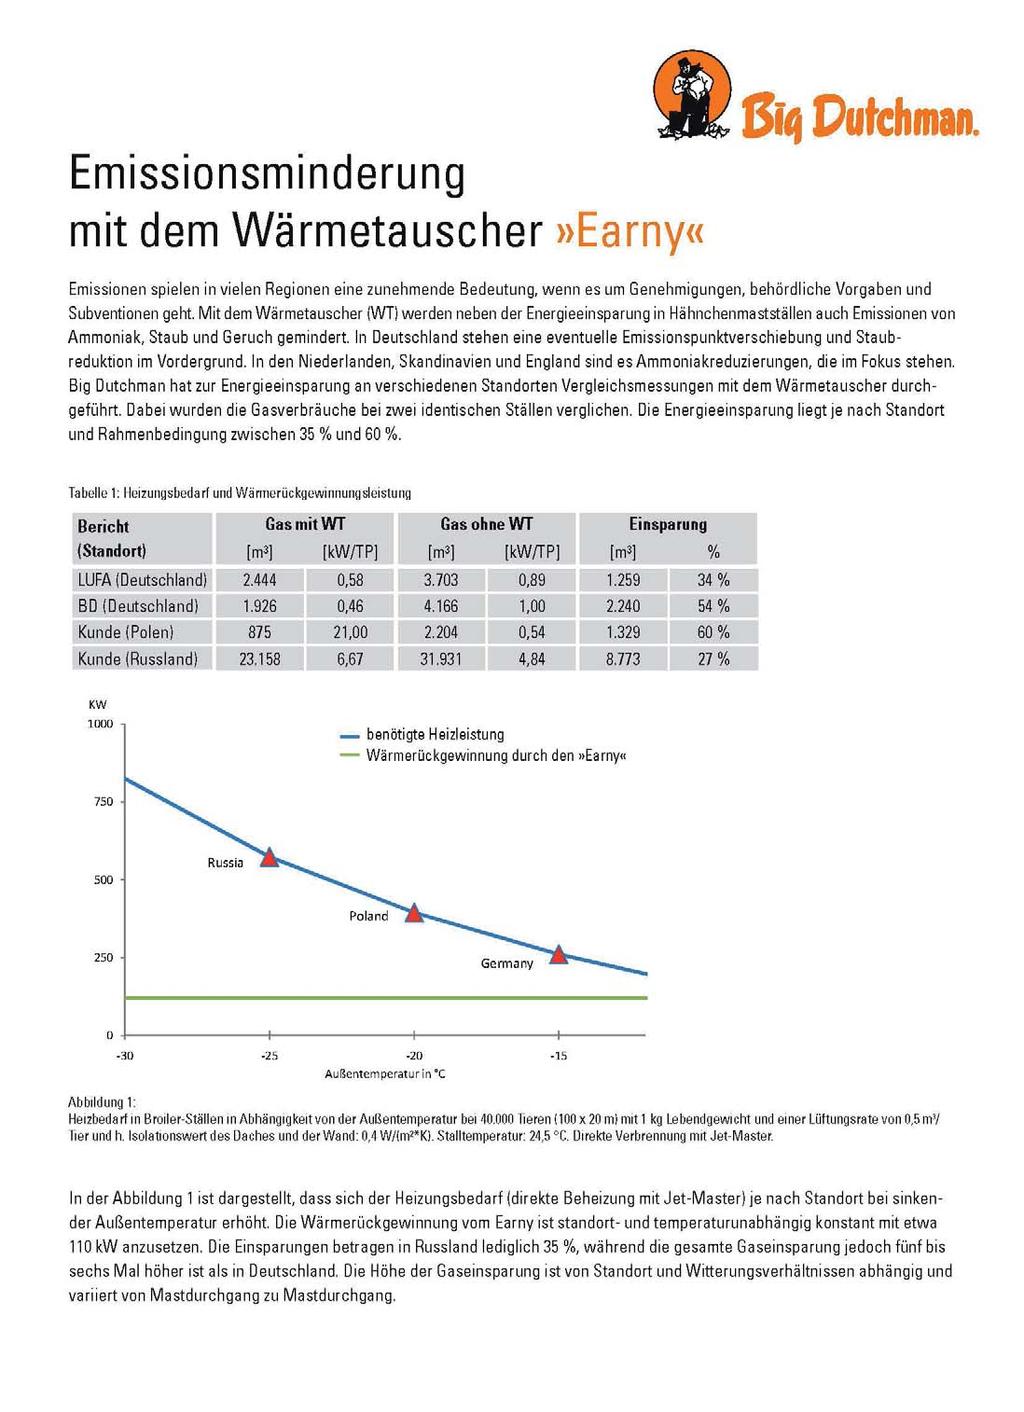 Geflügelmaststall mit Wärmetauscher & Filter Messungen in Deutschland mit